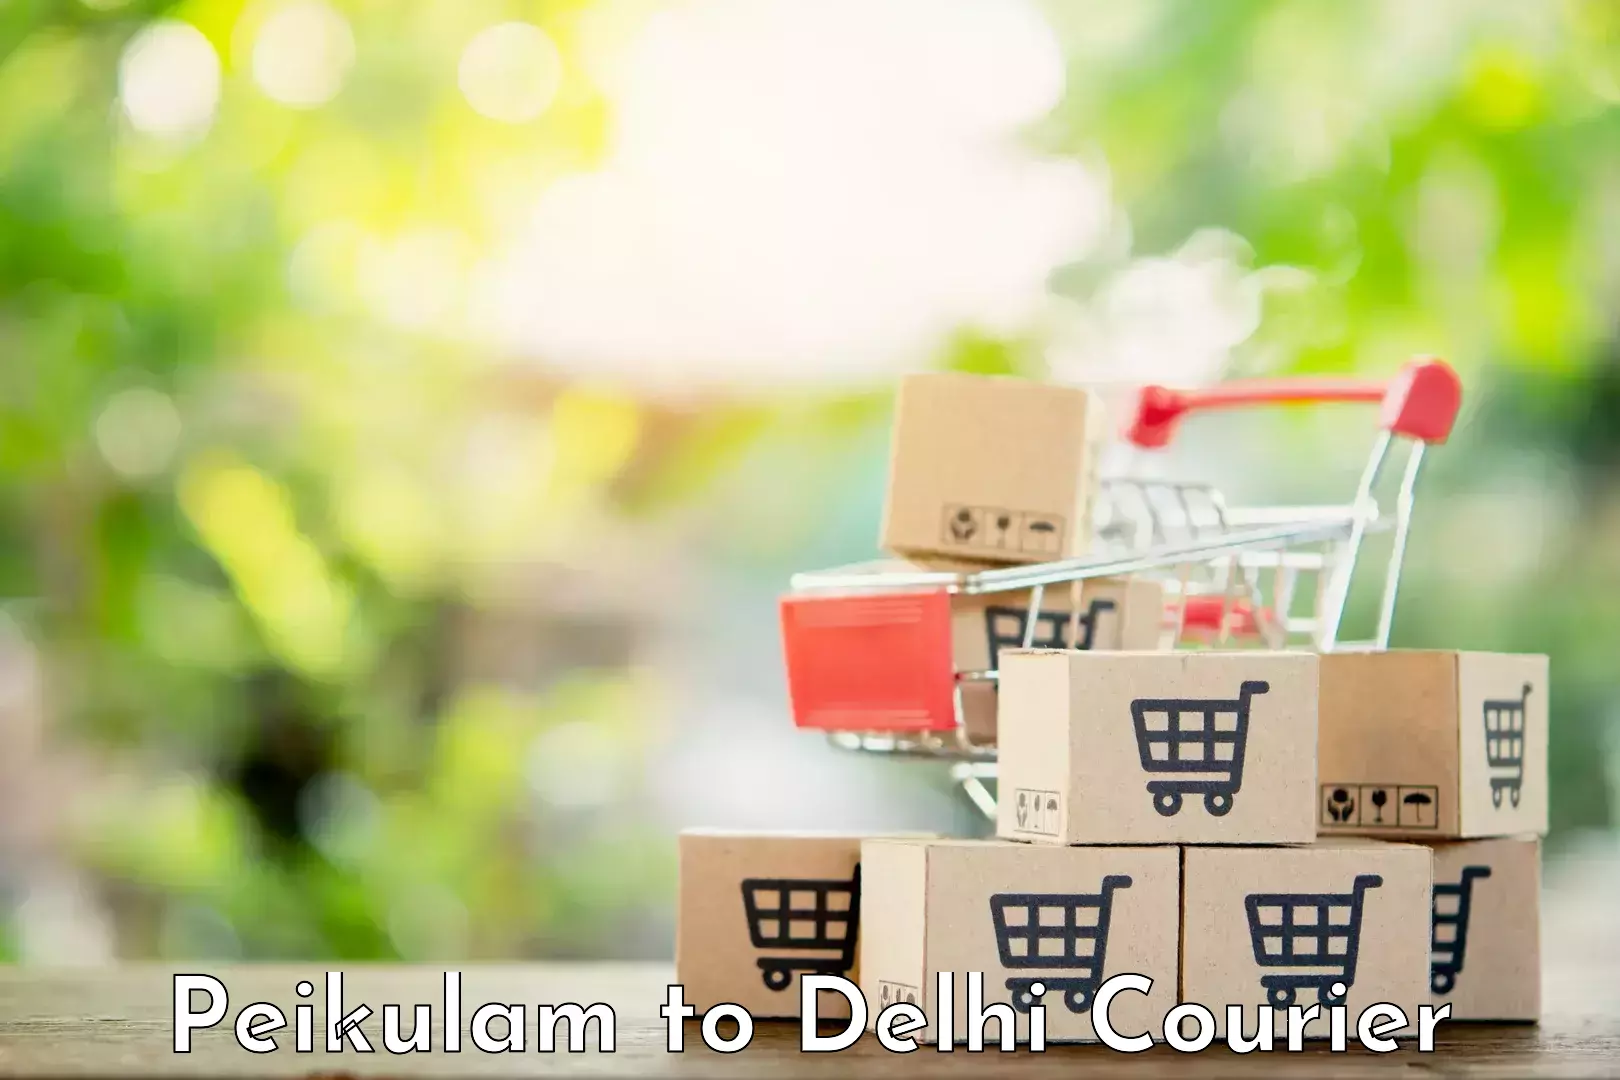 Efficient parcel transport in Peikulam to Delhi